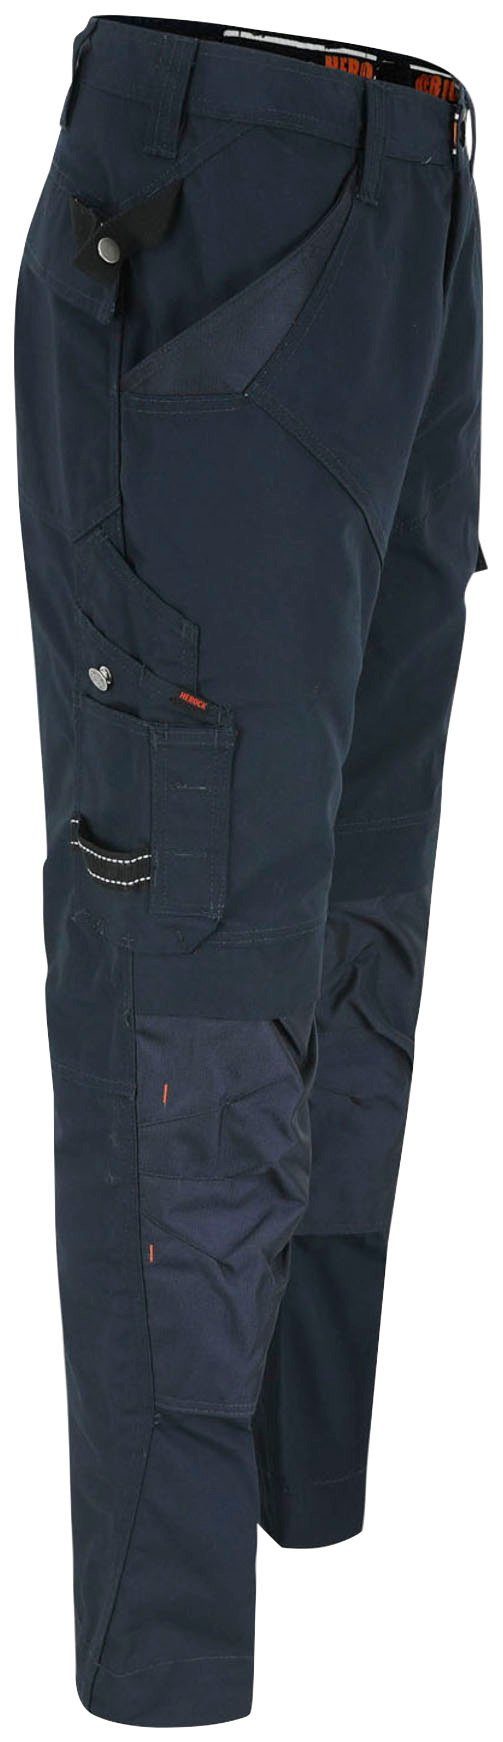 - 8 leicht - Arbeitshose Hose marine - Regelbarer & Taschen Apollo Herock Wasserabweisend bequem Bund